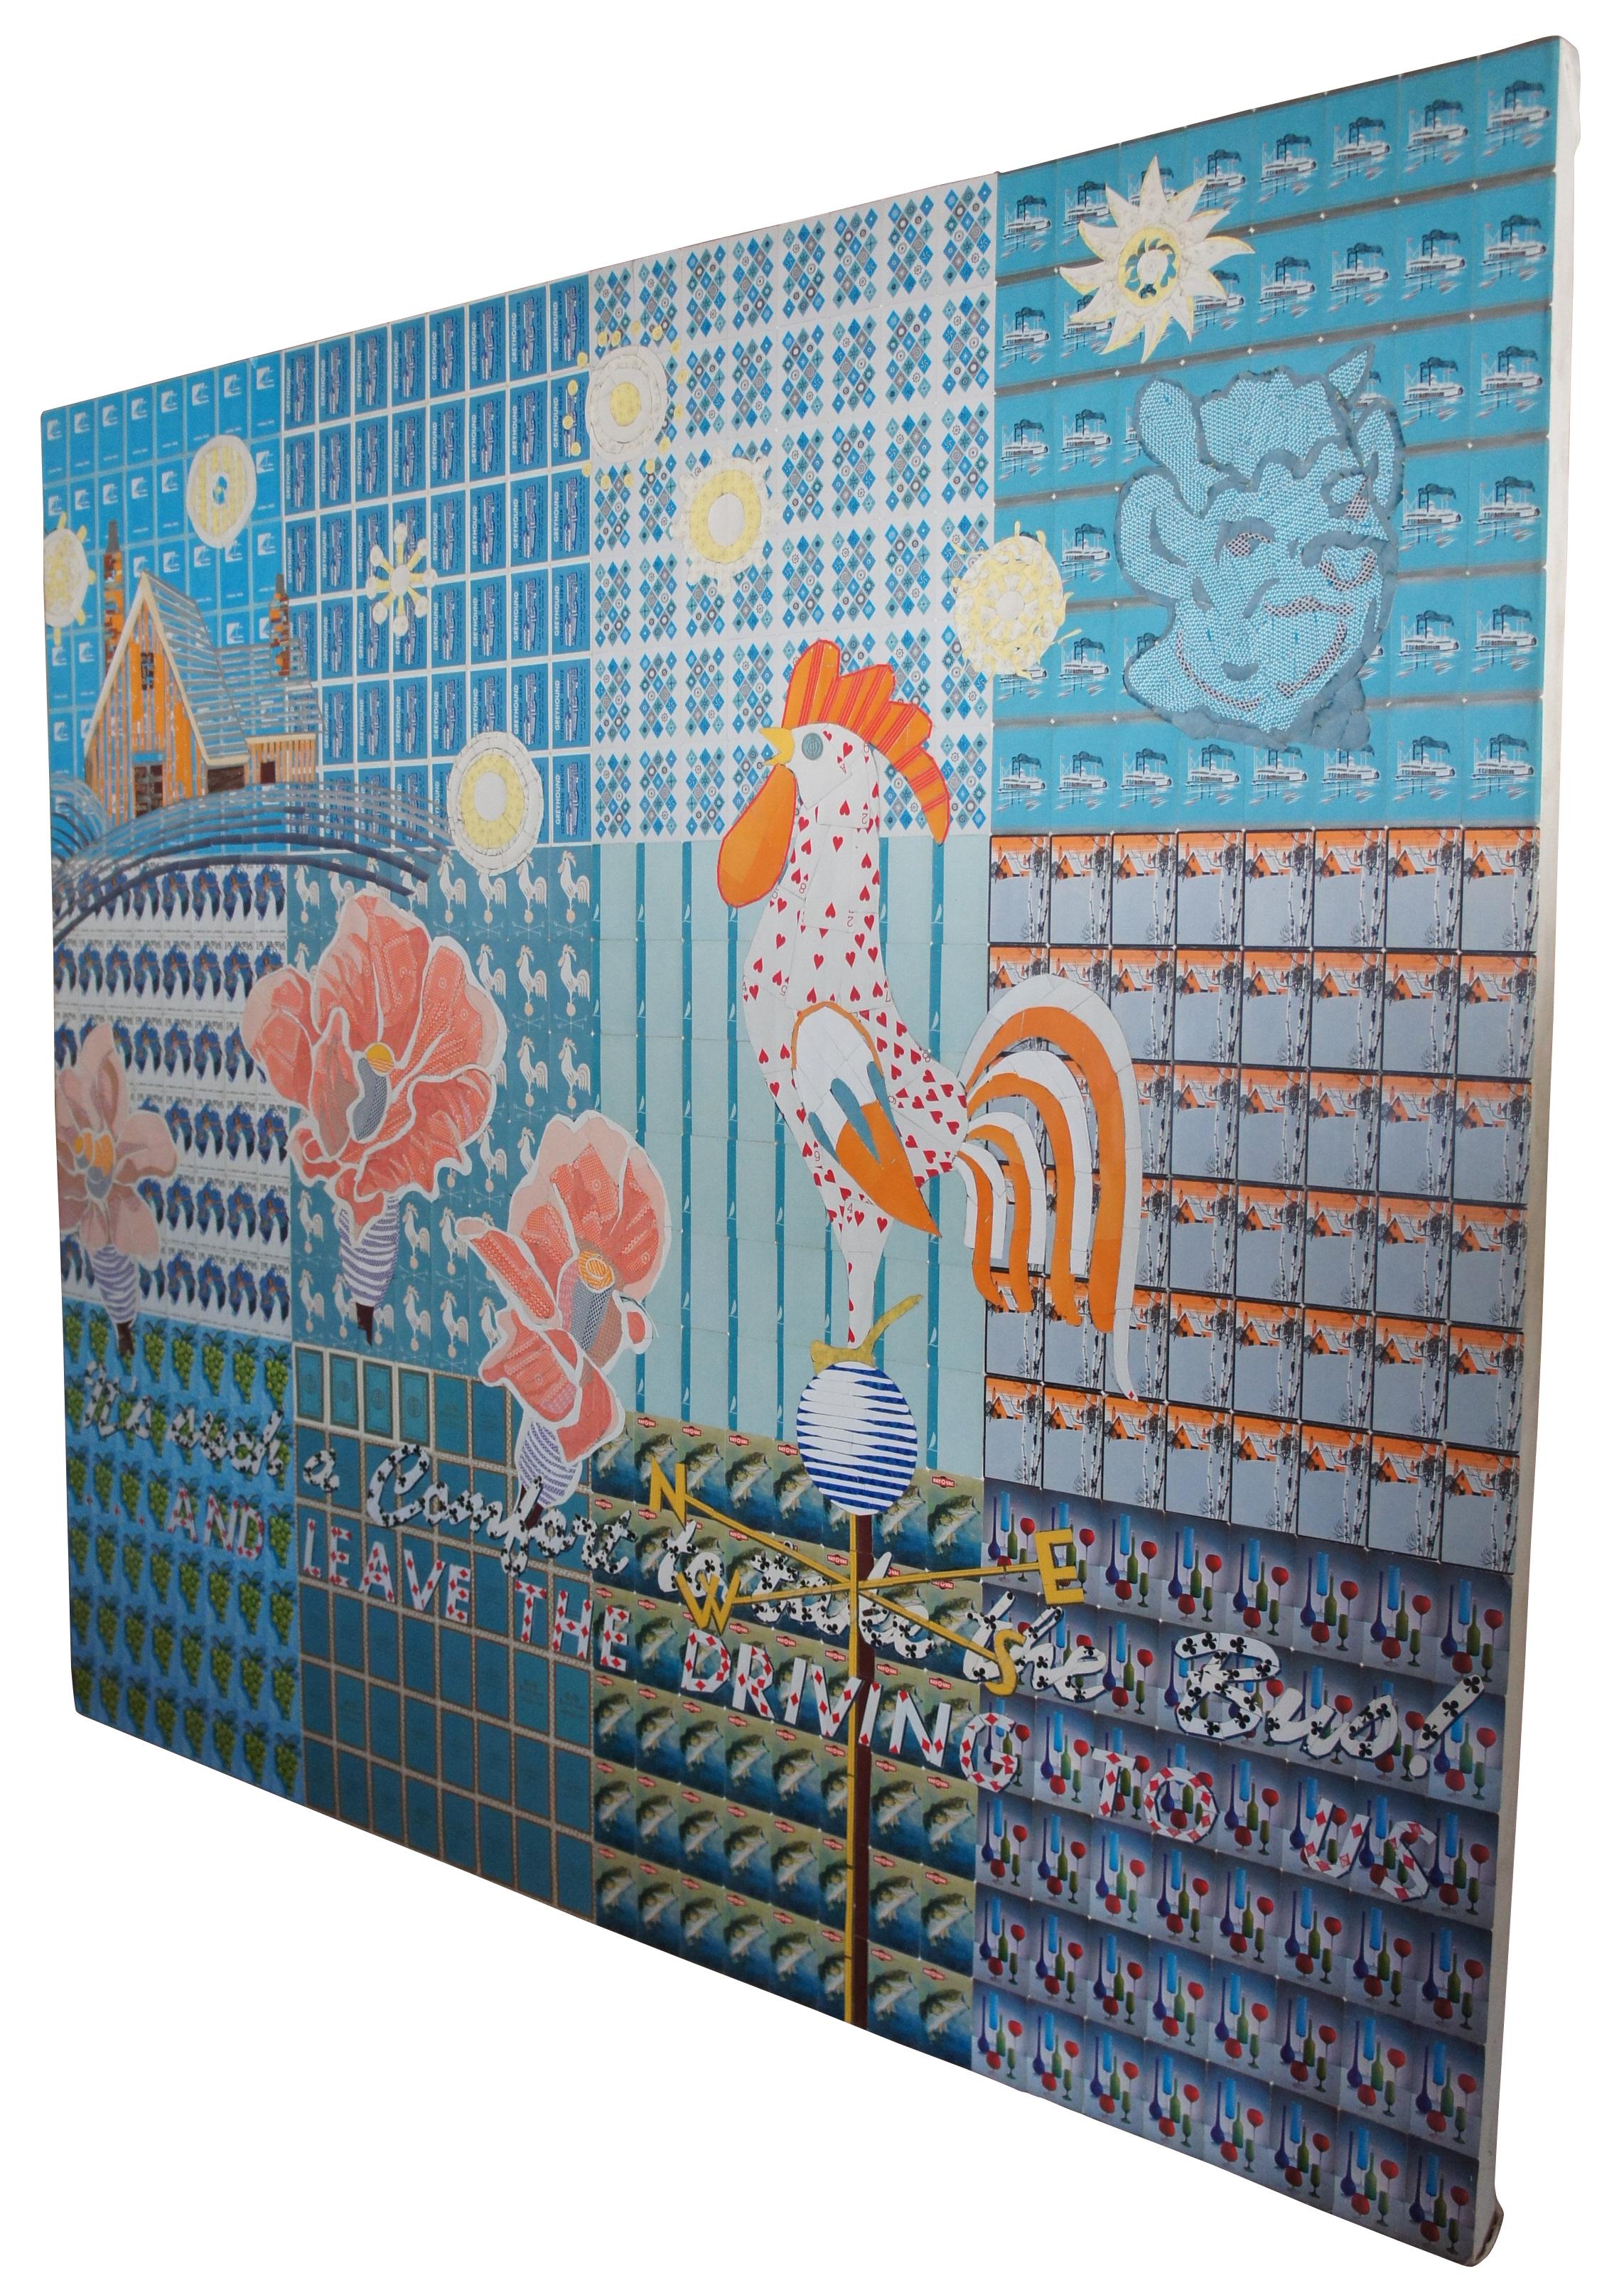 1995 Spielkarten-Collage Kunstwerk von Robert Heckes gemischt-media Decoupage 72